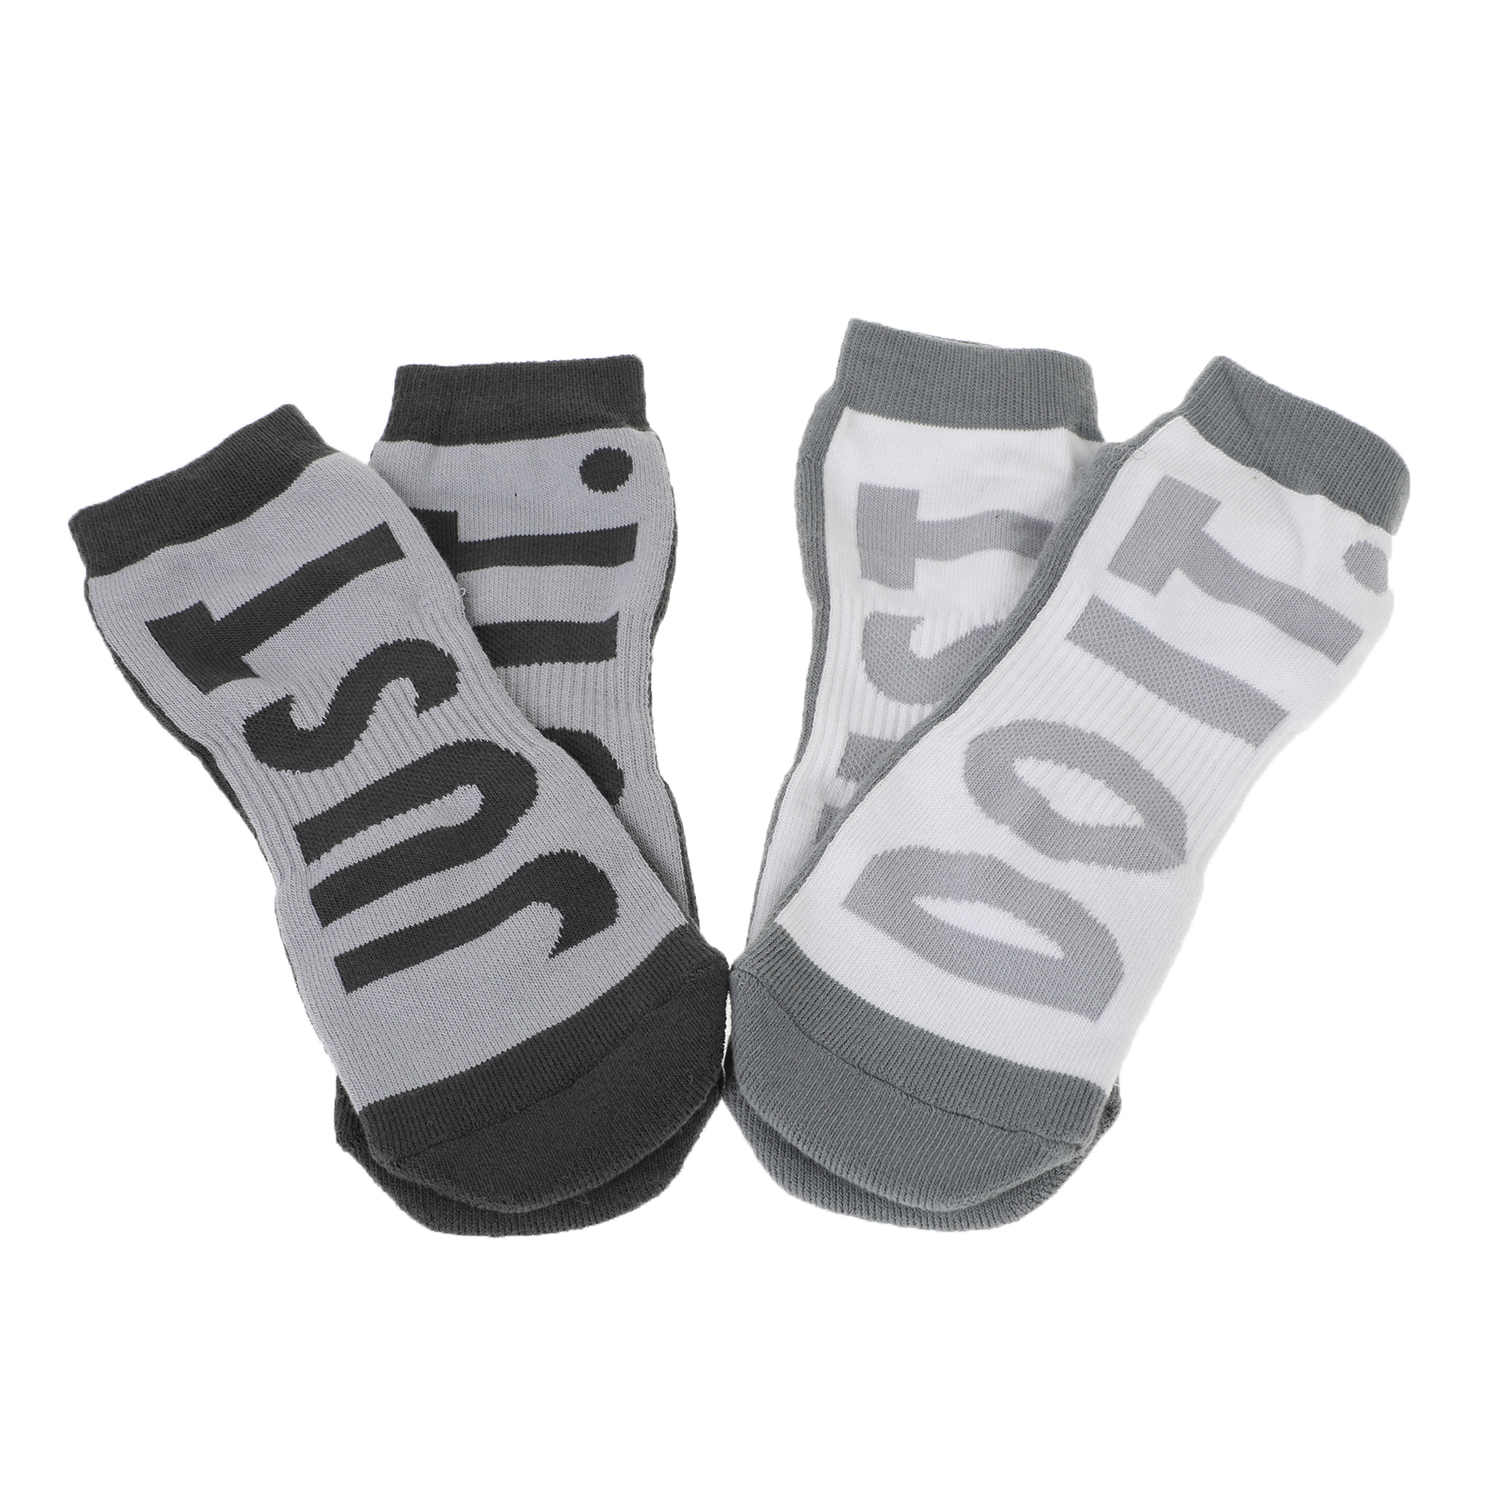 Ανδρικά/Αξεσουάρ/Κάλτσες NIKE - Σετ από 2 ζευγάρια ανδρικές κάλτσες Nike Sportswear No-Show γκρι-λευκές